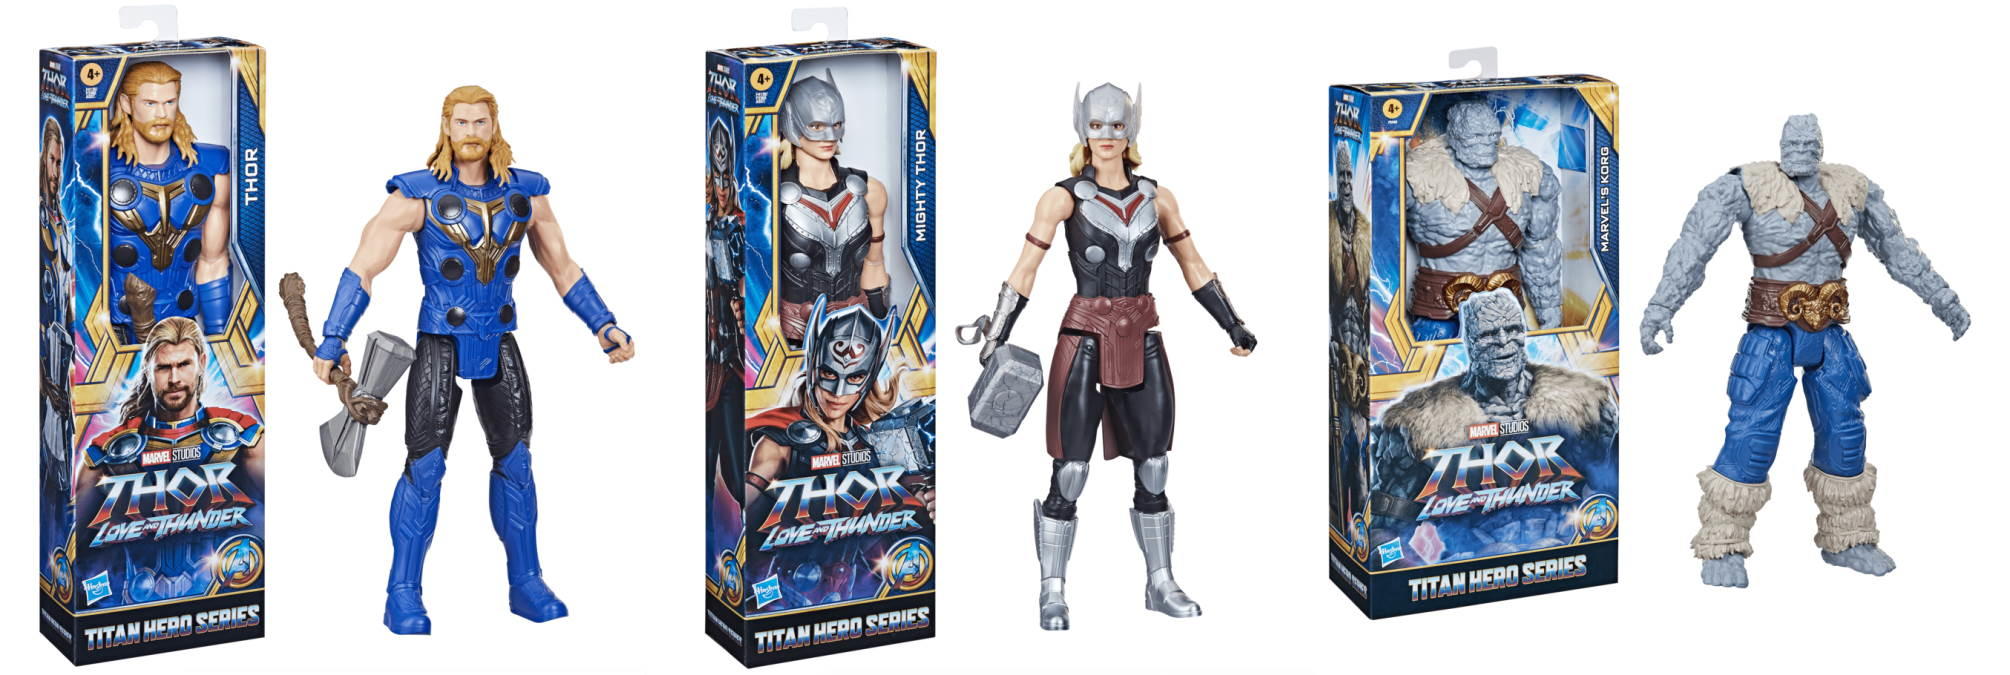 thor-titan-hero-toys.jpg